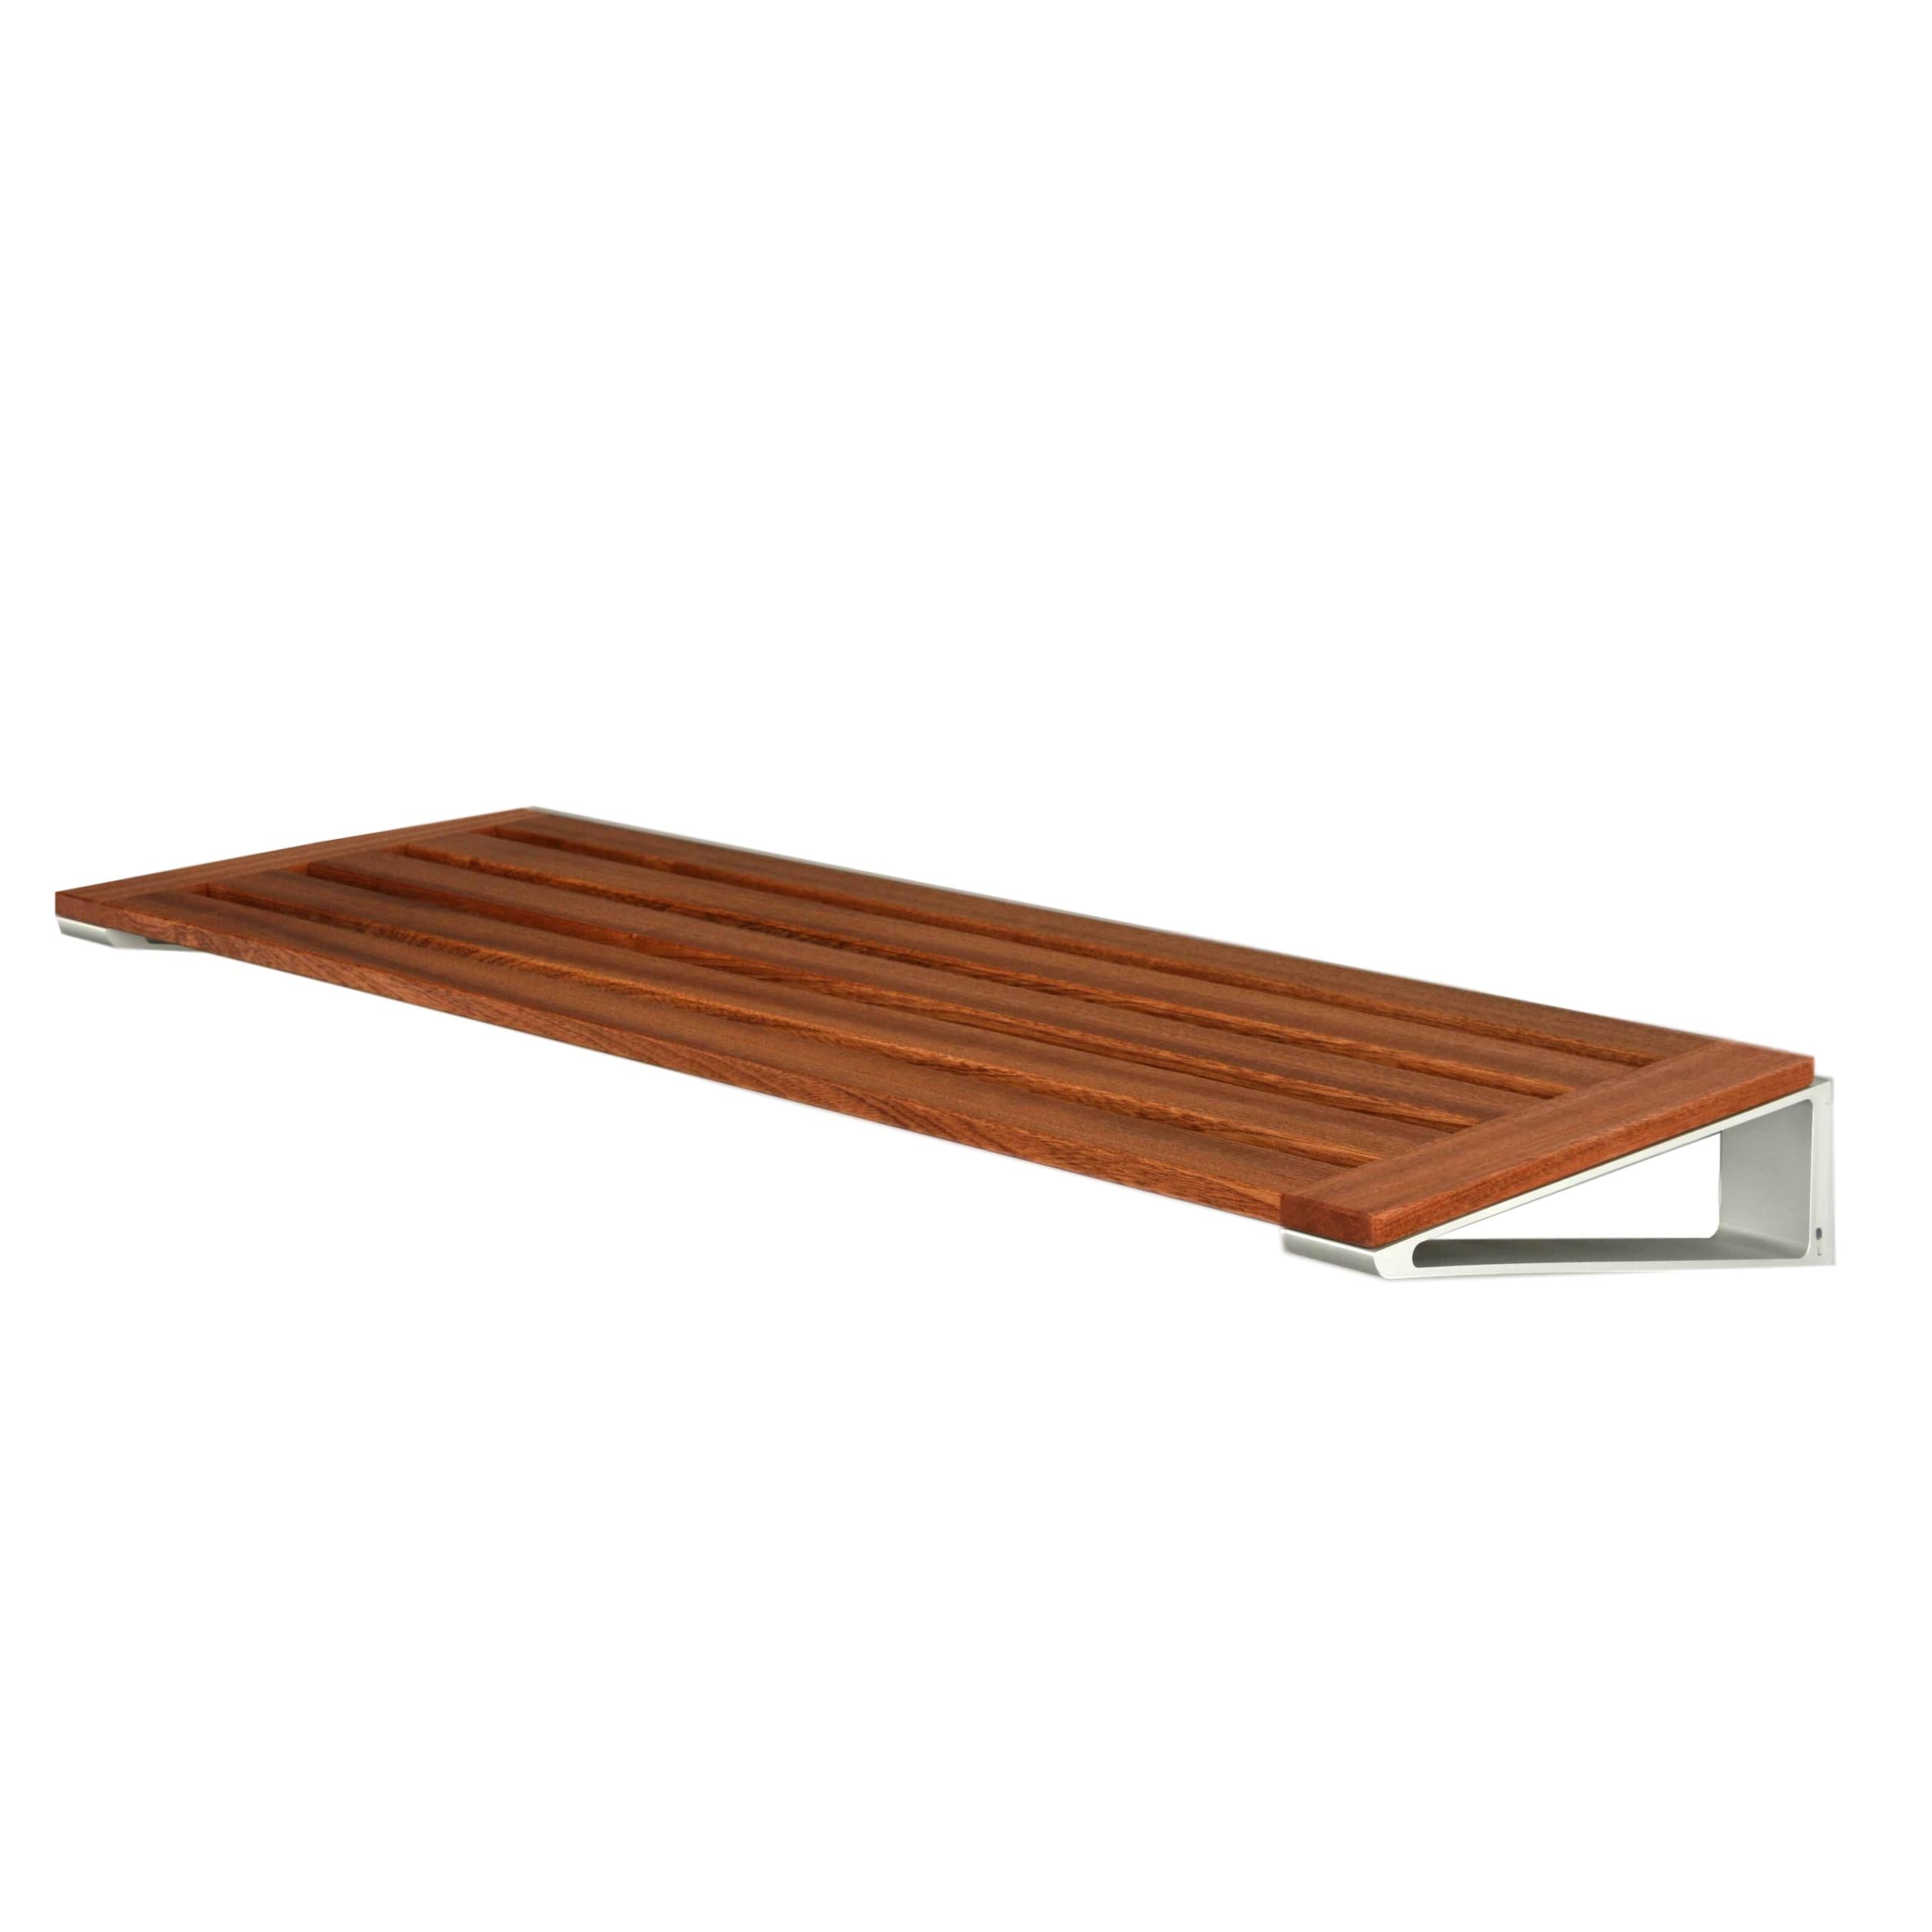 Loca Knaxsko rack 40 cm, mahogny/aluminium